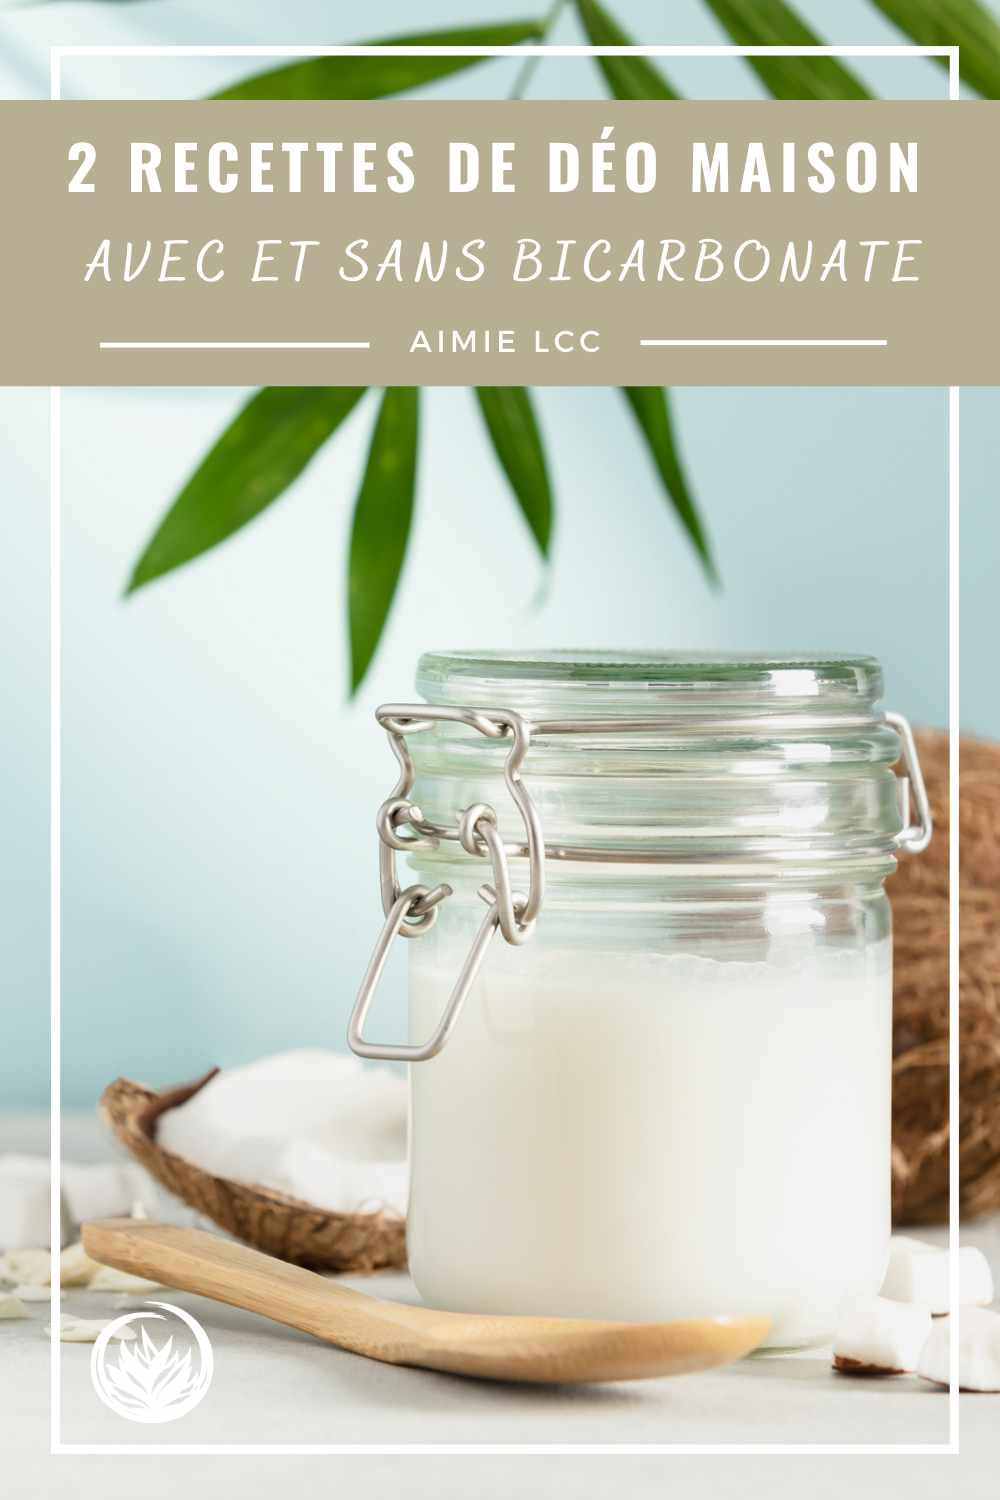 Recette deodorant maison : 2 formules avec et sans bicarbonate - Aimie Lcc